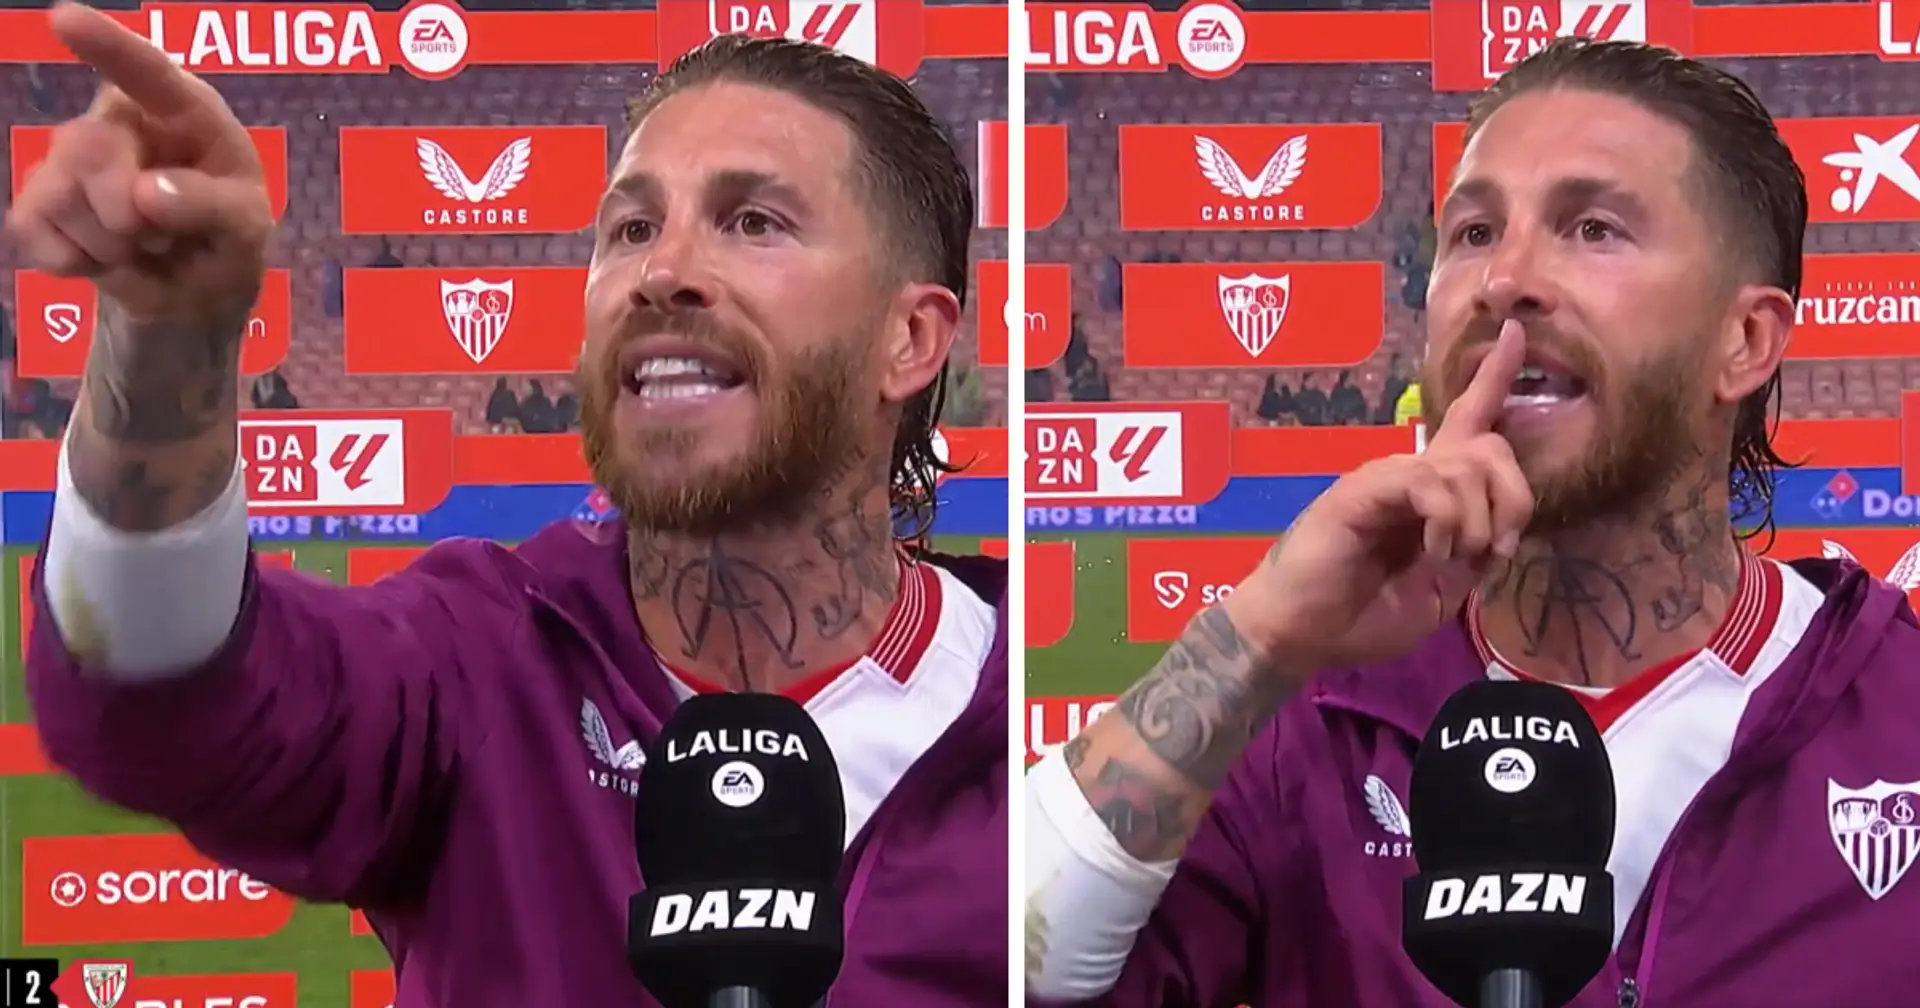 'Stai zitto e vai!': Sergio Ramos interrompe l'intervista post partita per discutere con un tifoso